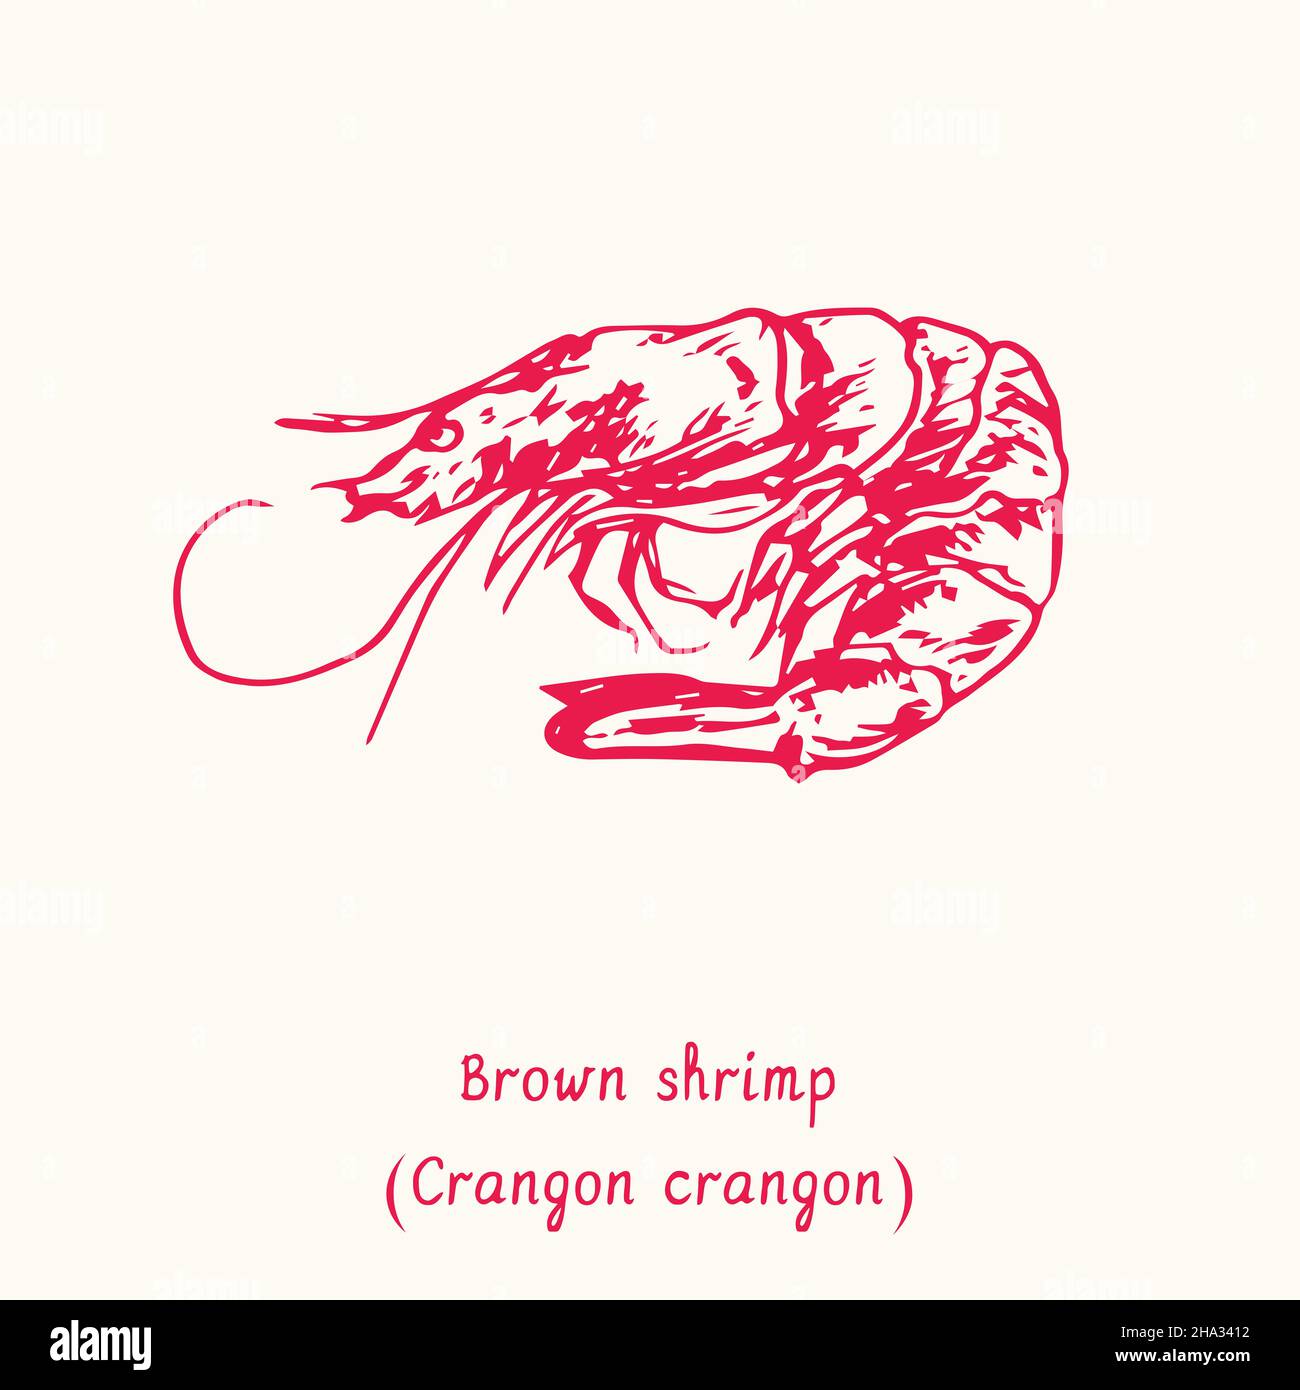 Braune Garnelen (Crangon Crangon) Draufsicht. Tusche schwarz-weiße Doodle-Zeichnung im Holzschnitt-Stil mit Inschrift. Stockfoto